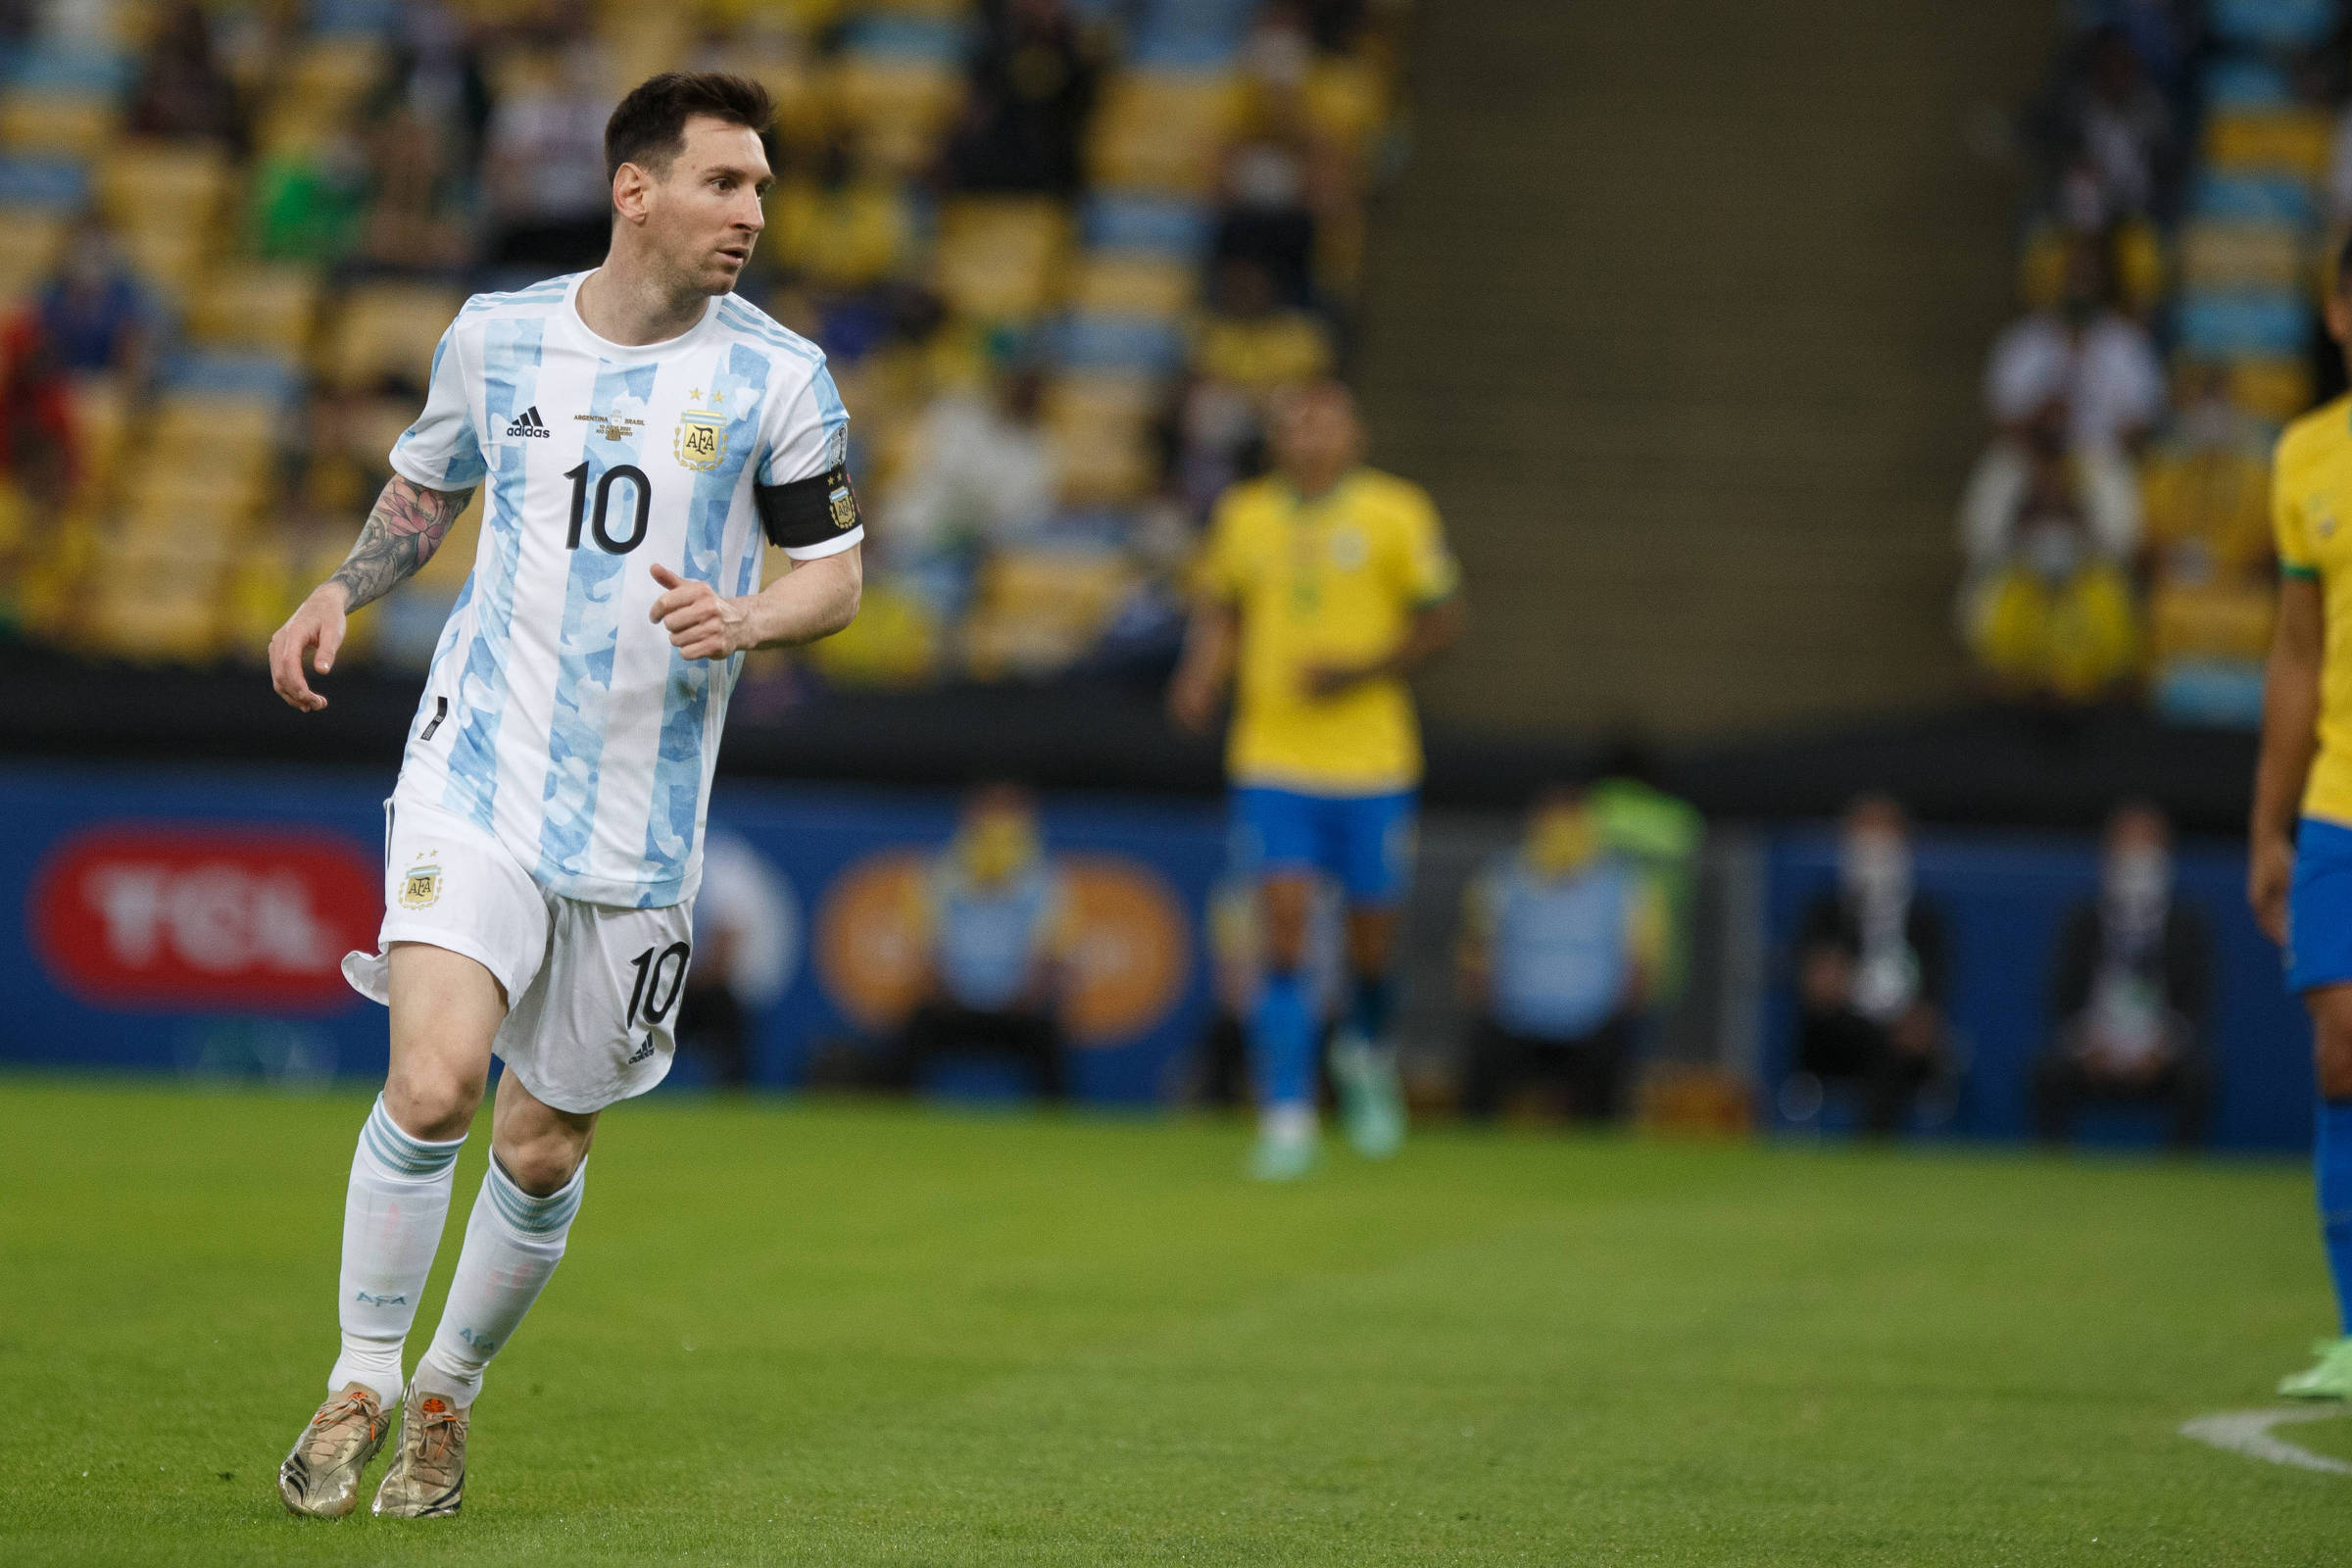 Falta de contrato atrasa venda de ingressos de 'último jogo' de Messi no  Brasil